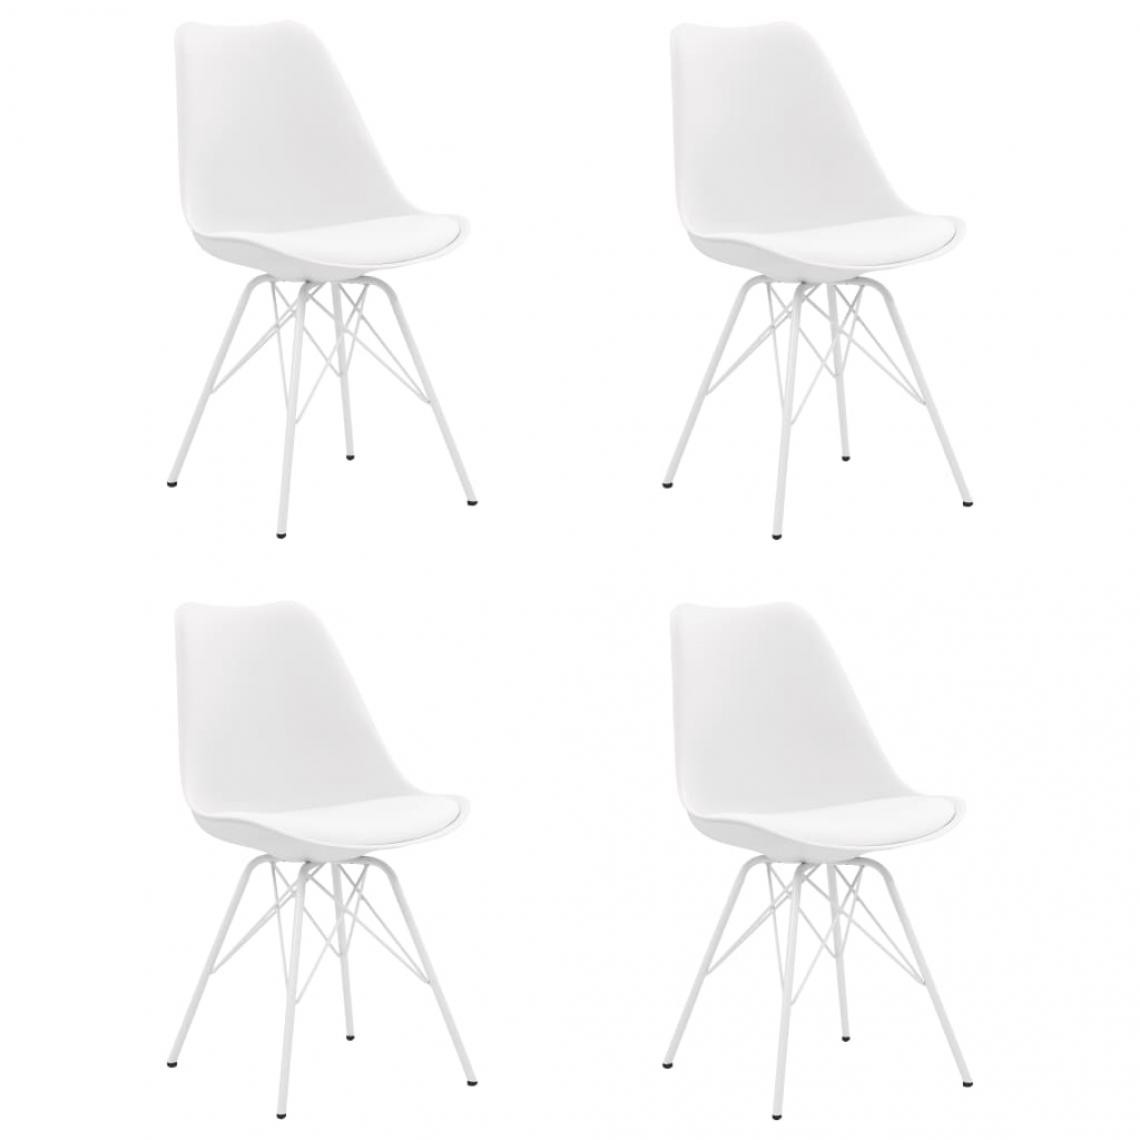 Decoshop26 - Lot de 4 chaises de salle à manger cuisine design scandinave similicuir blanc CDS021260 - Chaises